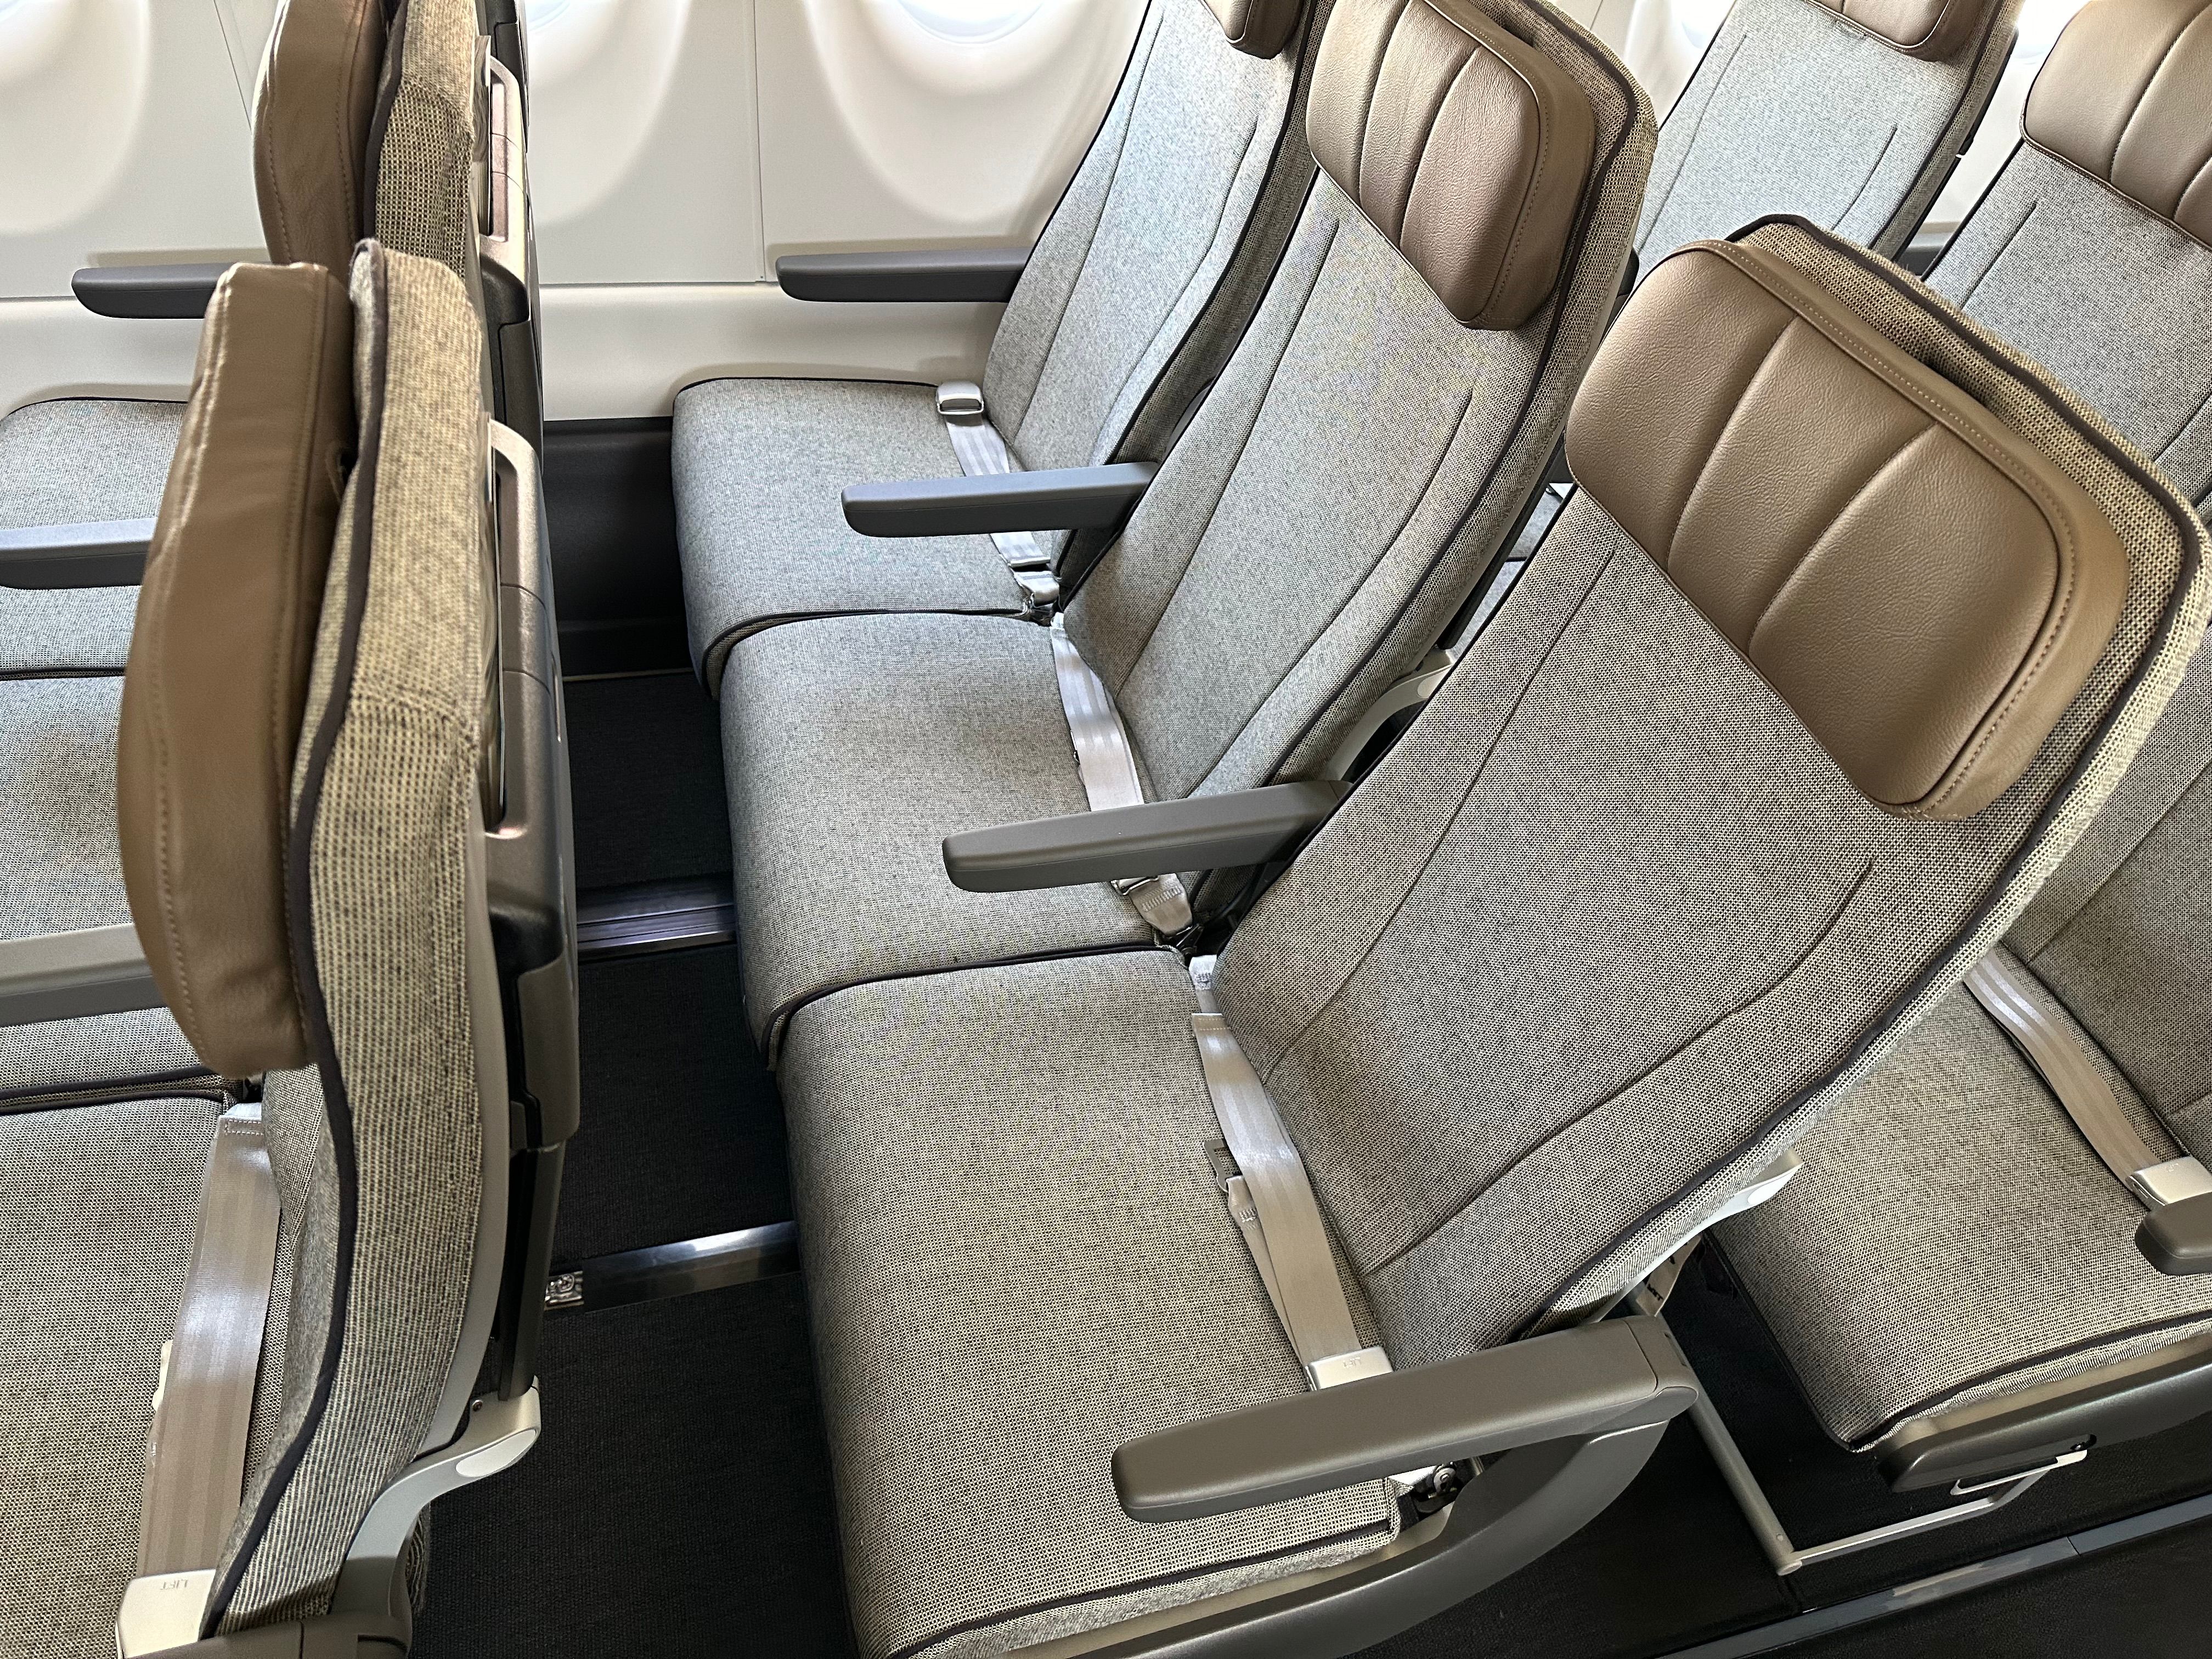 Qantas A220 seats